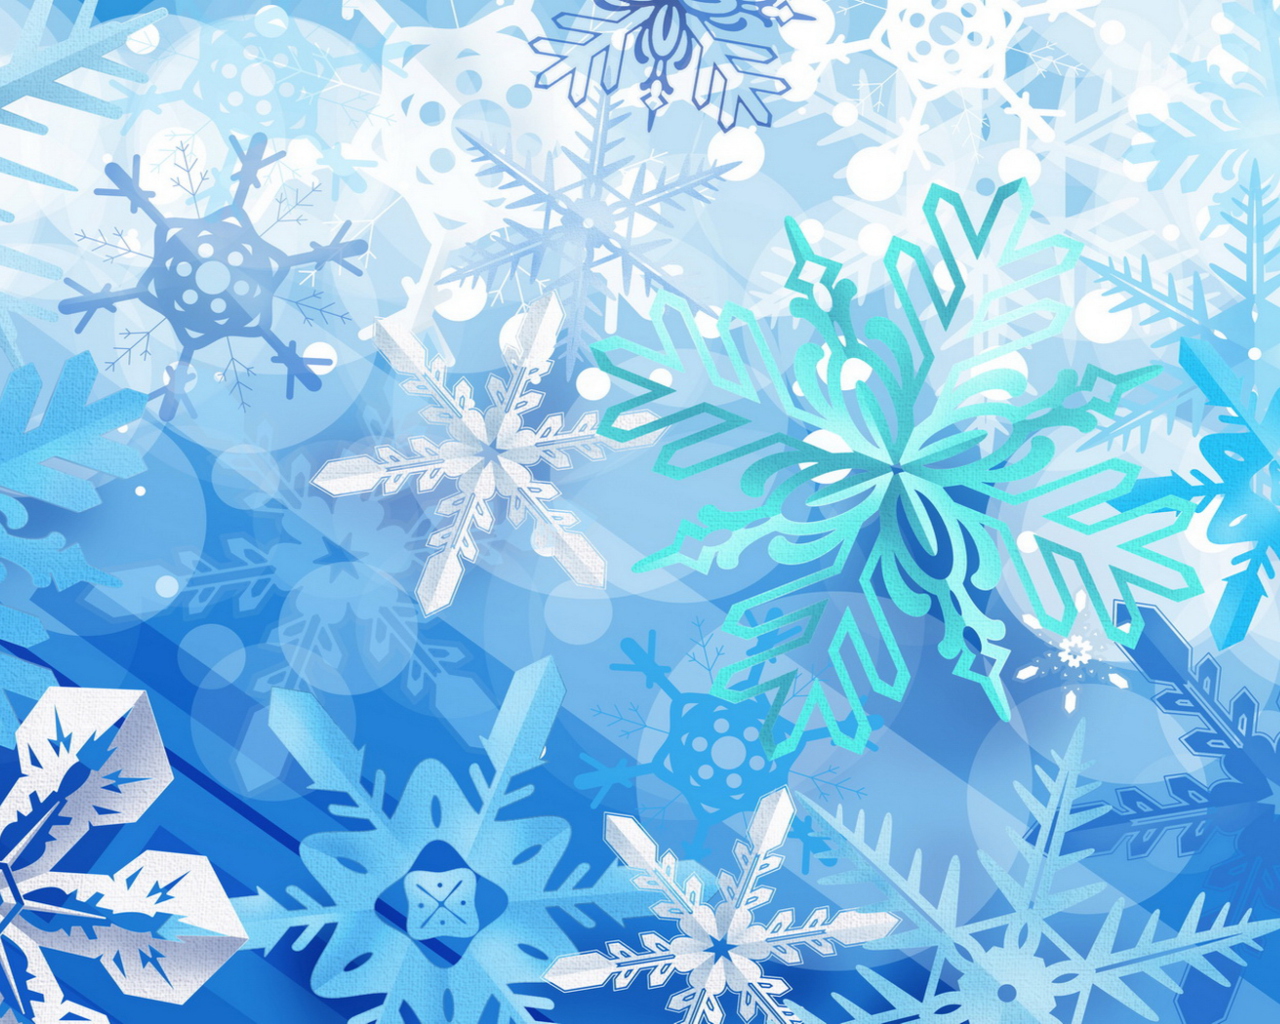 Das Christmas Snowflakes Wallpaper 1280x1024